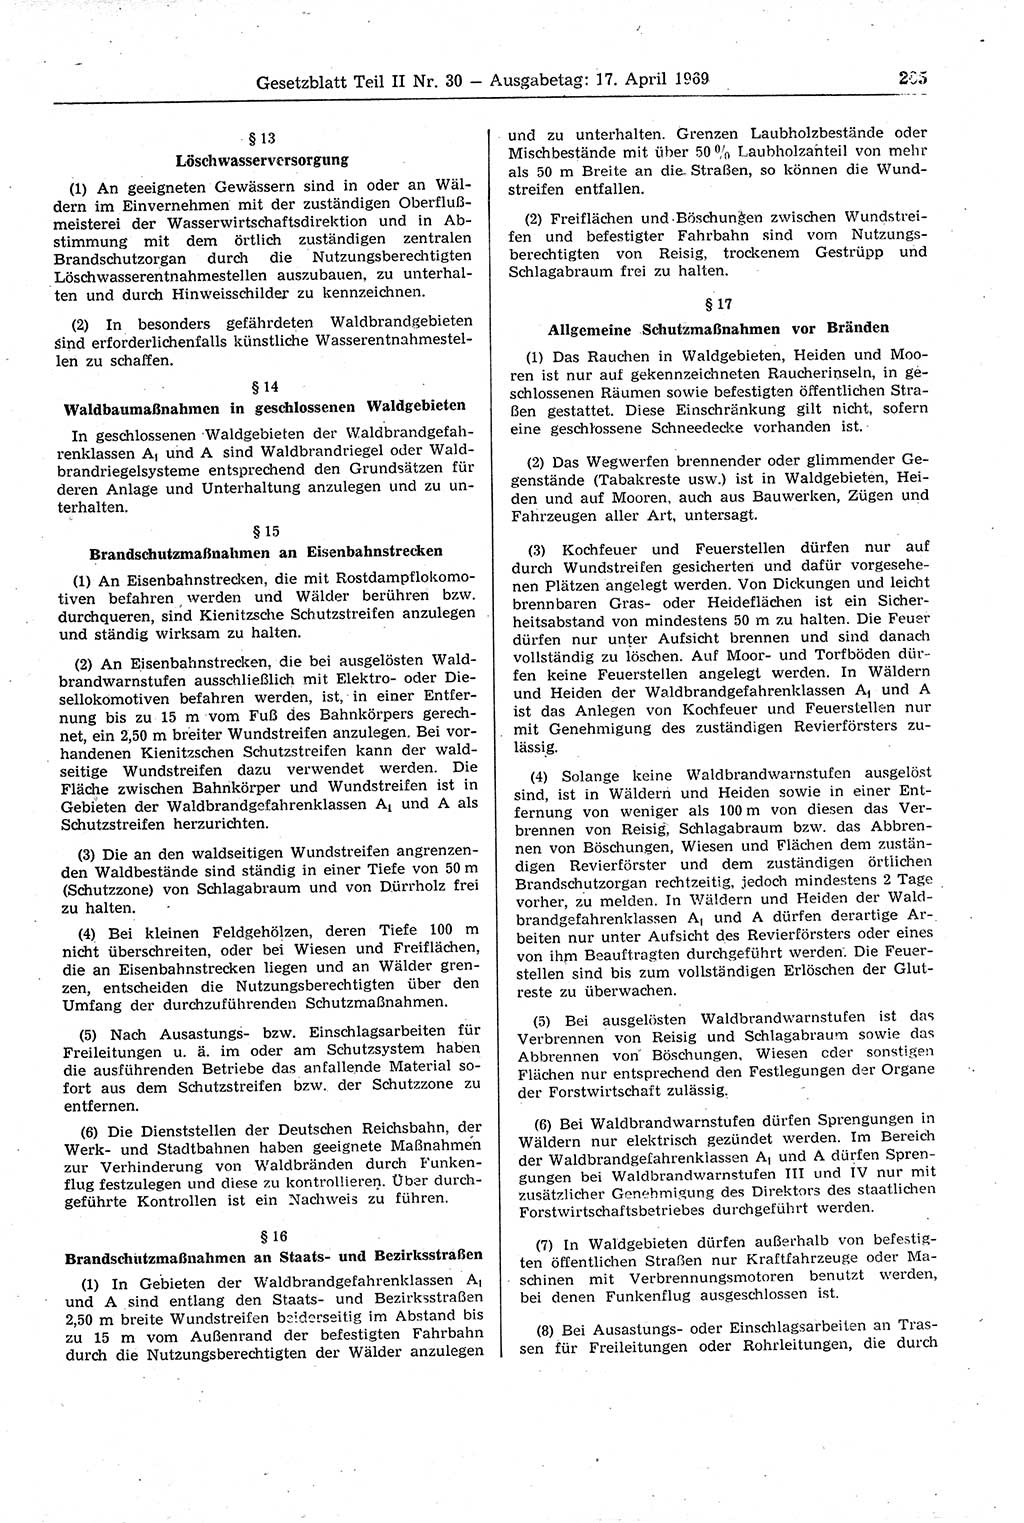 Gesetzblatt (GBl.) der Deutschen Demokratischen Republik (DDR) Teil ⅠⅠ 1969, Seite 205 (GBl. DDR ⅠⅠ 1969, S. 205)